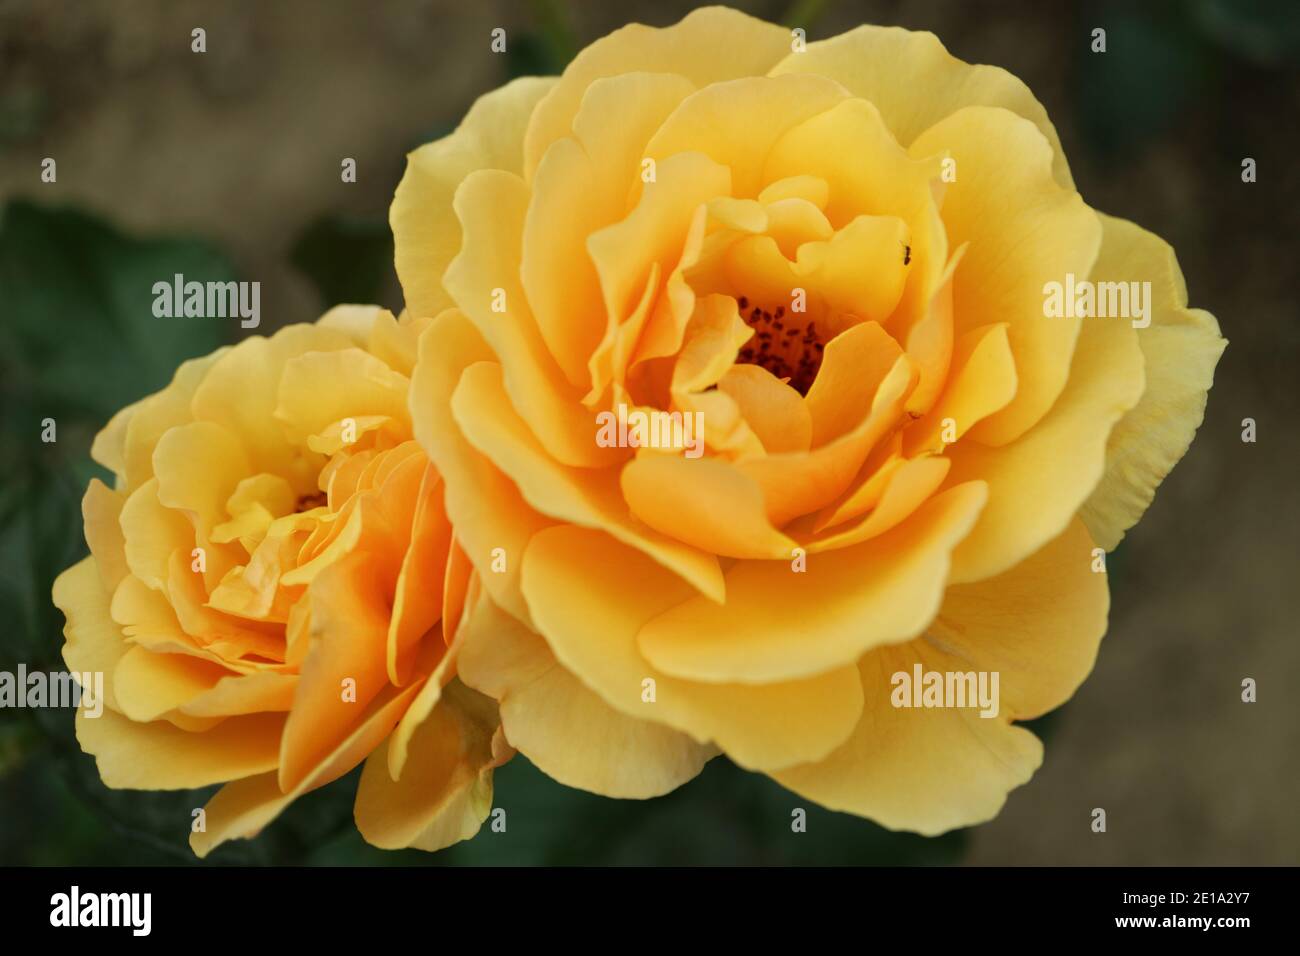 Roses jaunes au miel, deux roses florales dans le jardin, roses jaunes avec des pétales délicats et des feuilles vertes, tête de rose jaune au miel, photo florale, macro Banque D'Images